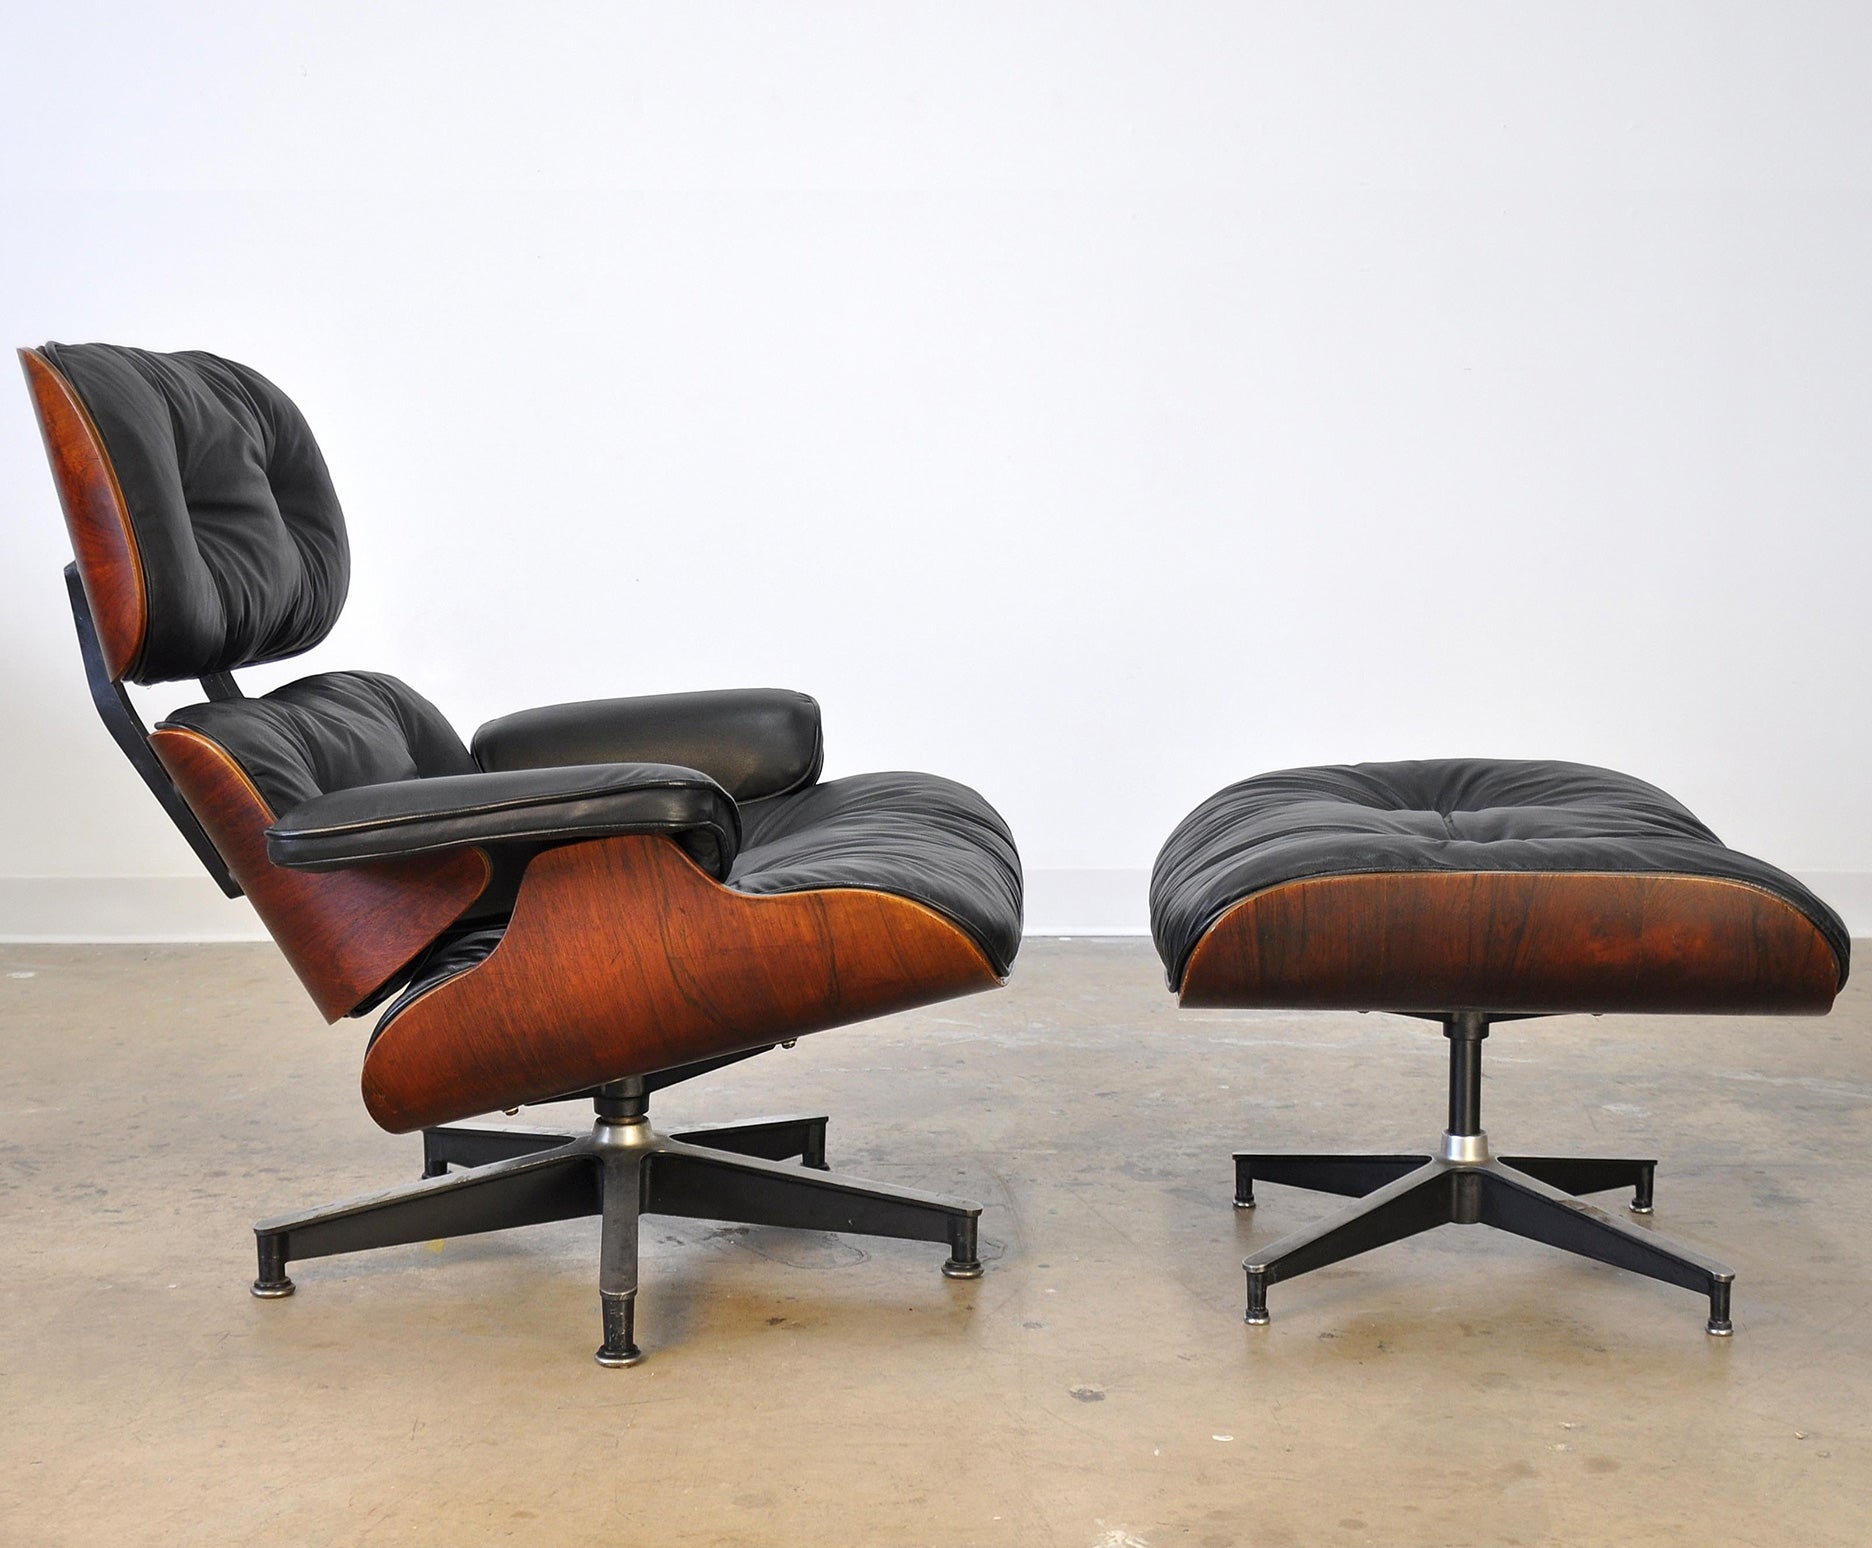 Chaise longue et pouf Eames